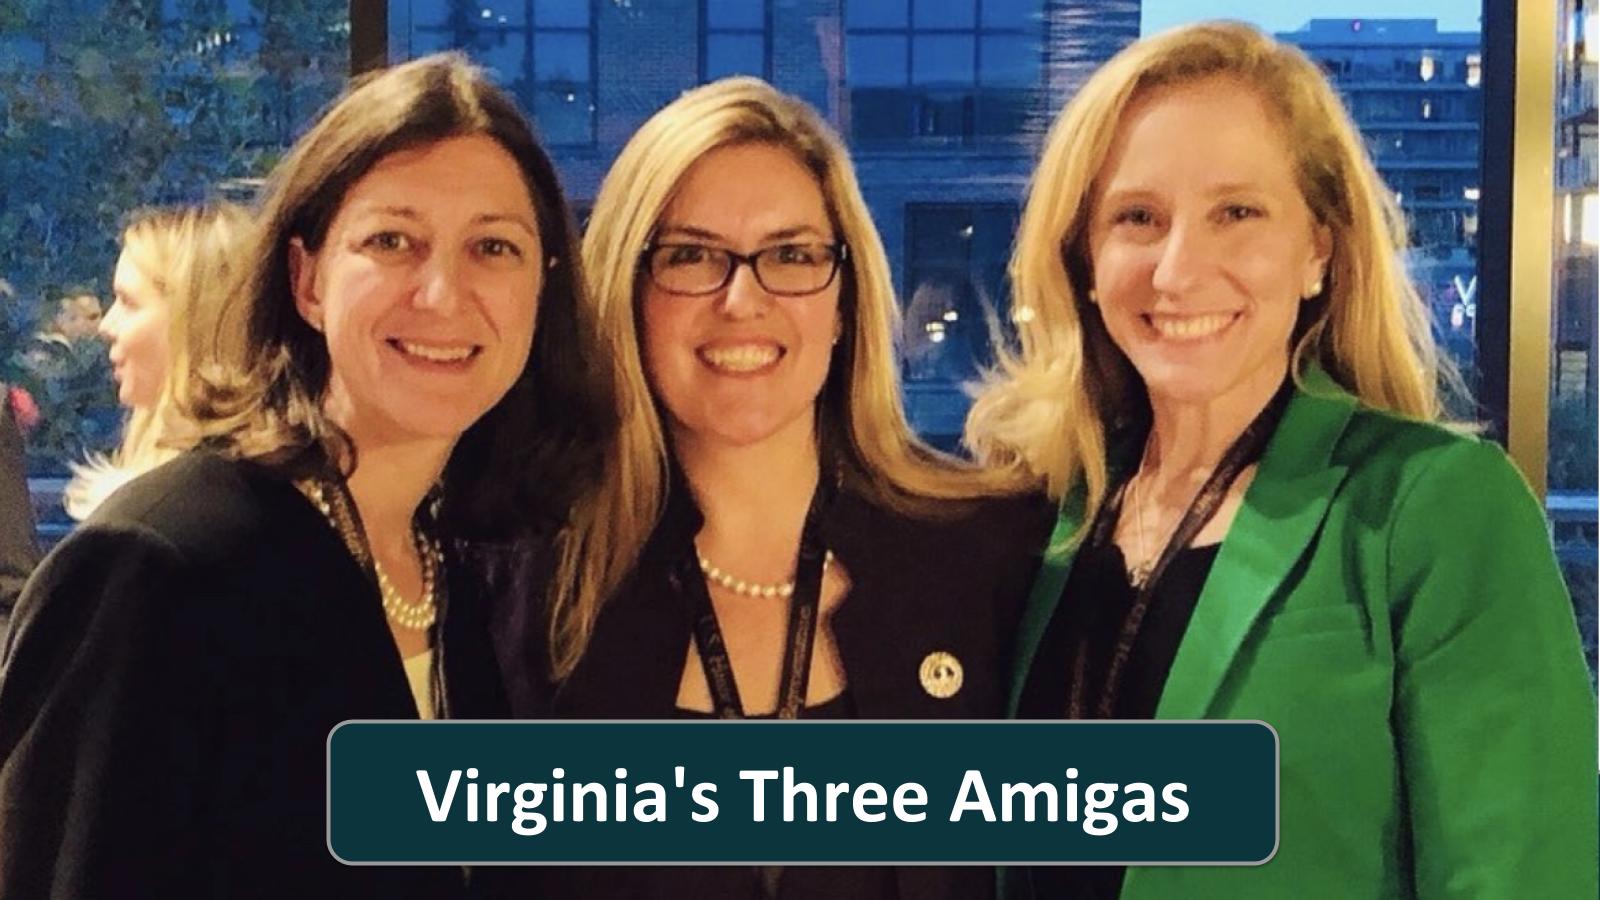 Virginia's Three Amigas